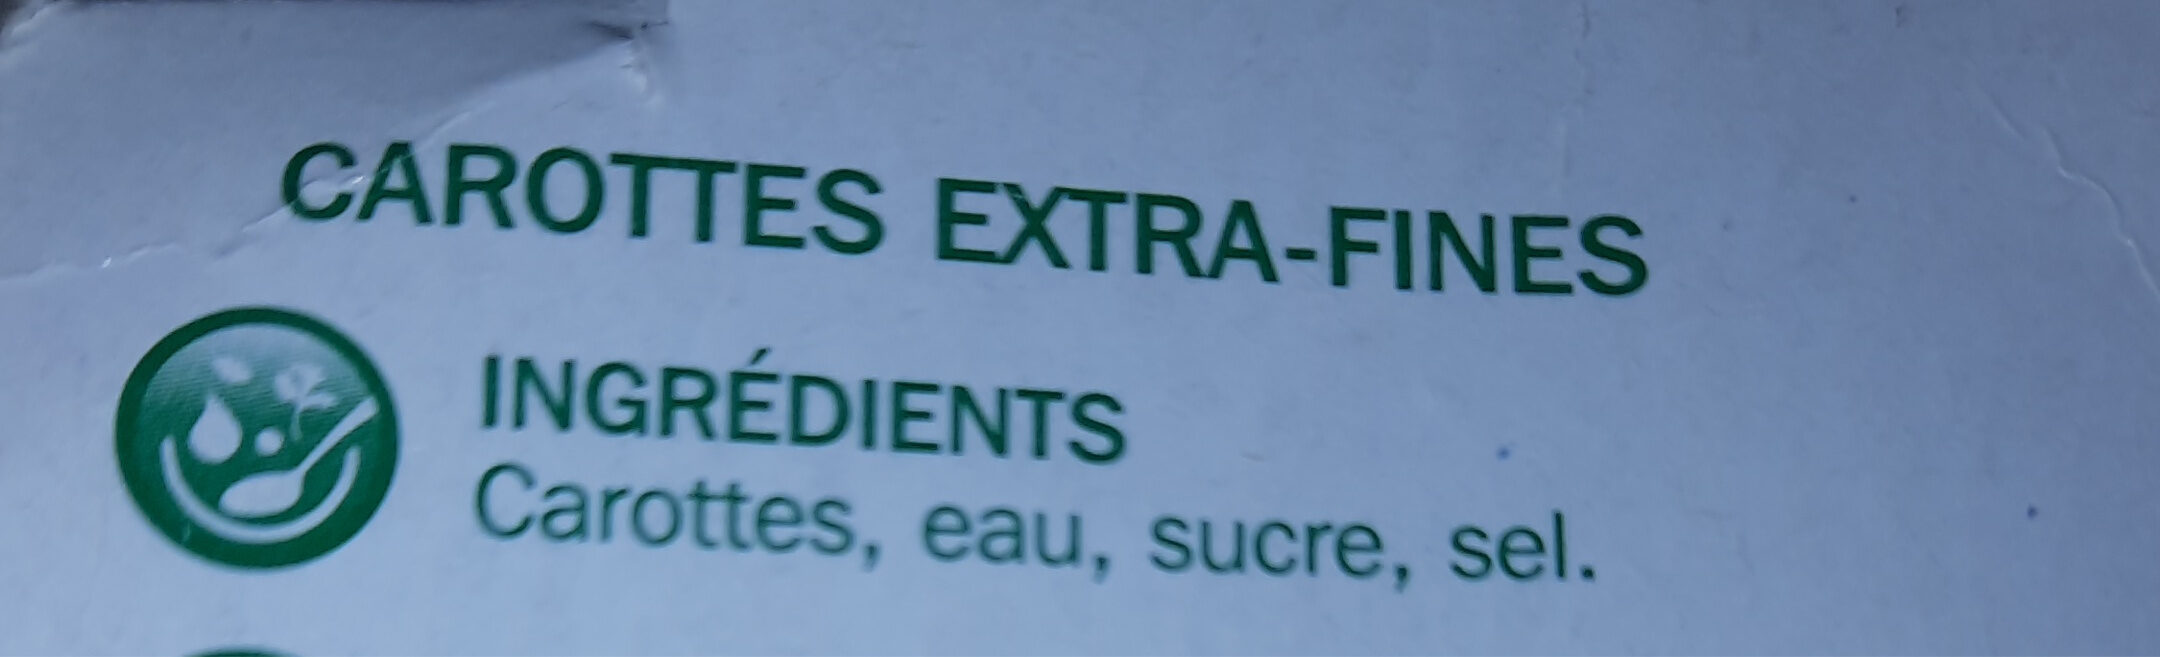 Carotte en conserve - Ingredients - fr